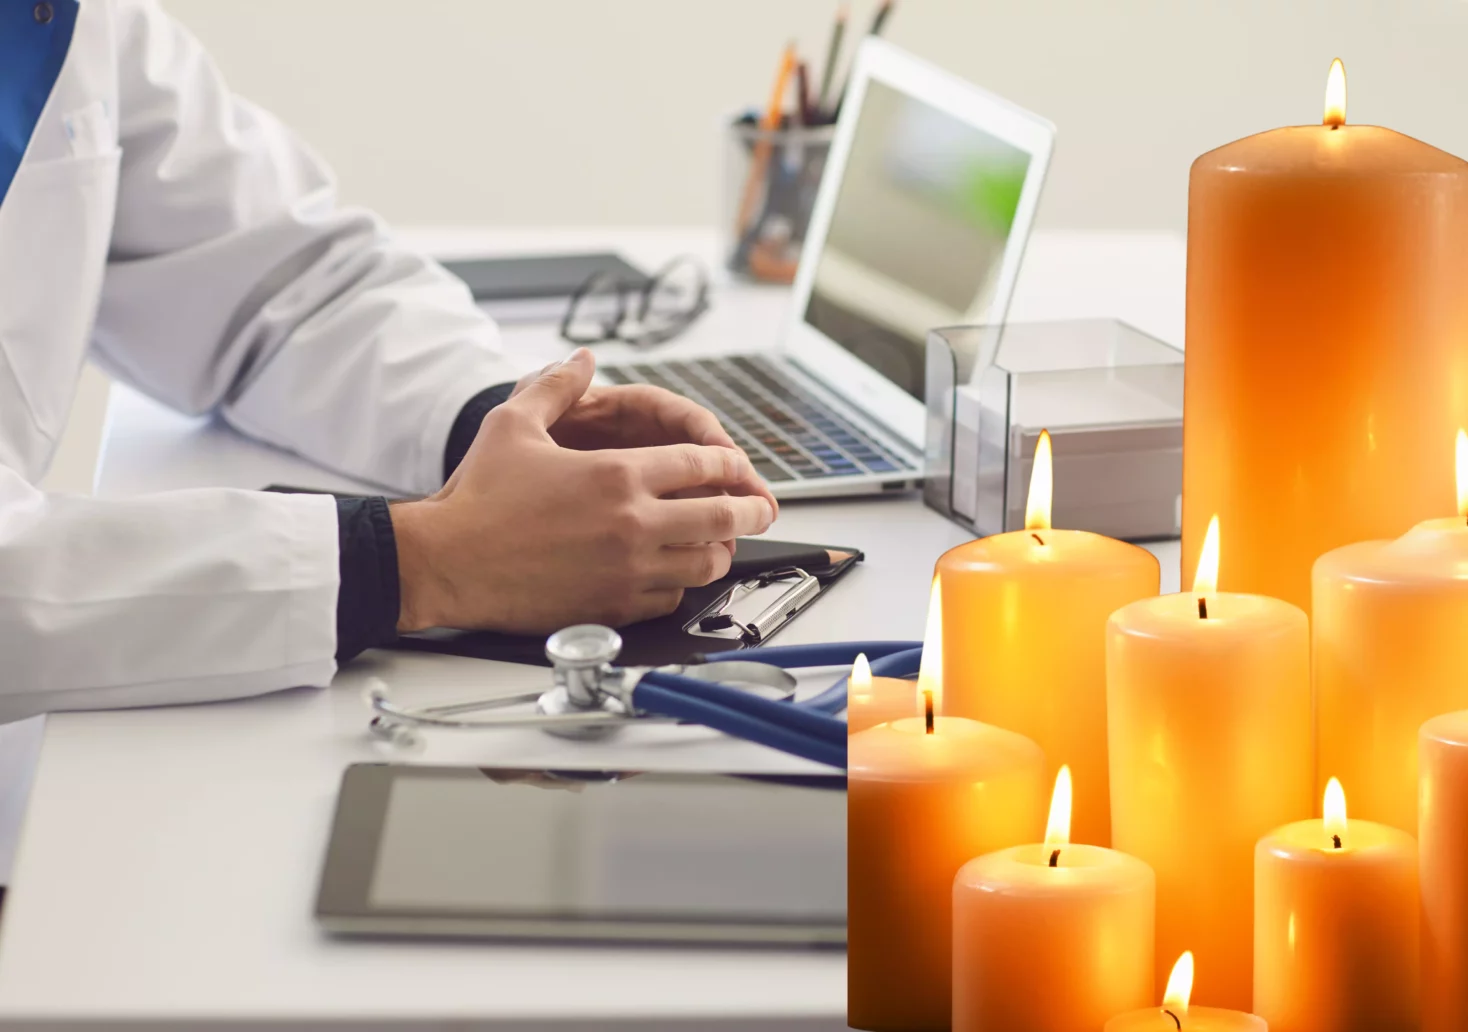 Foto in Beitrag von 5min.at: Zu sehen ist ein Arzt auf einem Tisch und einige Kerzen im Vordergrund.